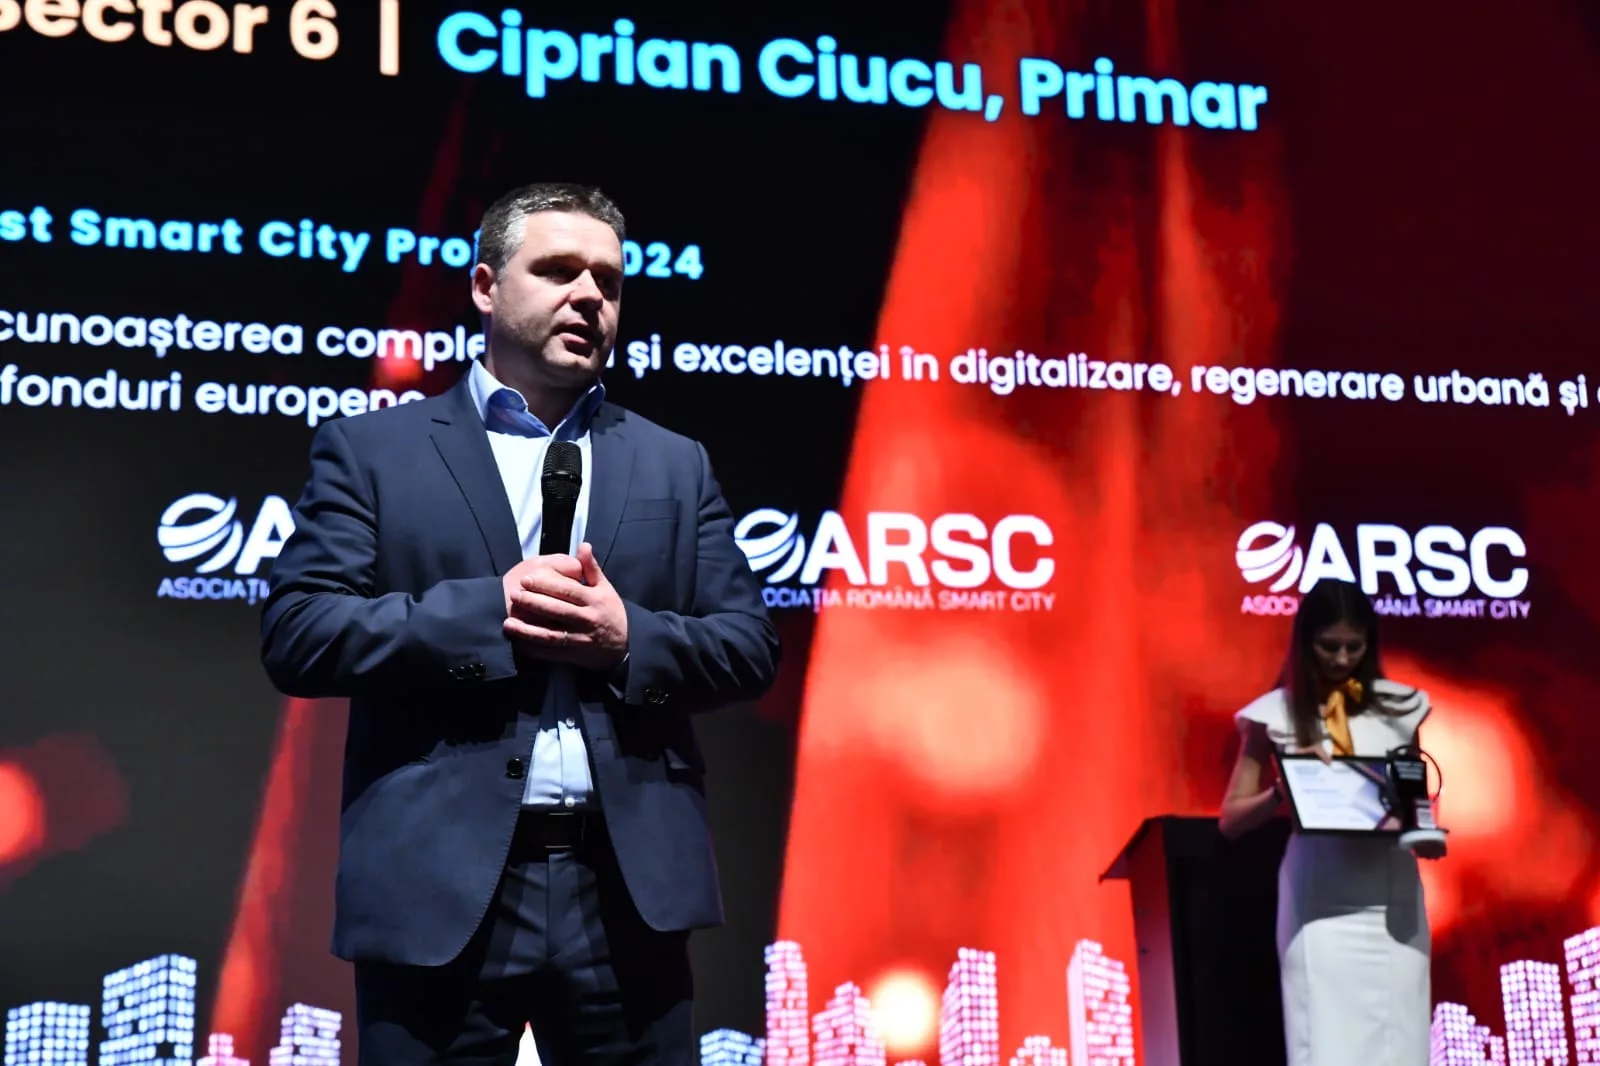 Sectorul 6 va avea cel mai mare centru de monitorizare video din București. Ciprian Ciucu: „Nu va fi un Big Brother”